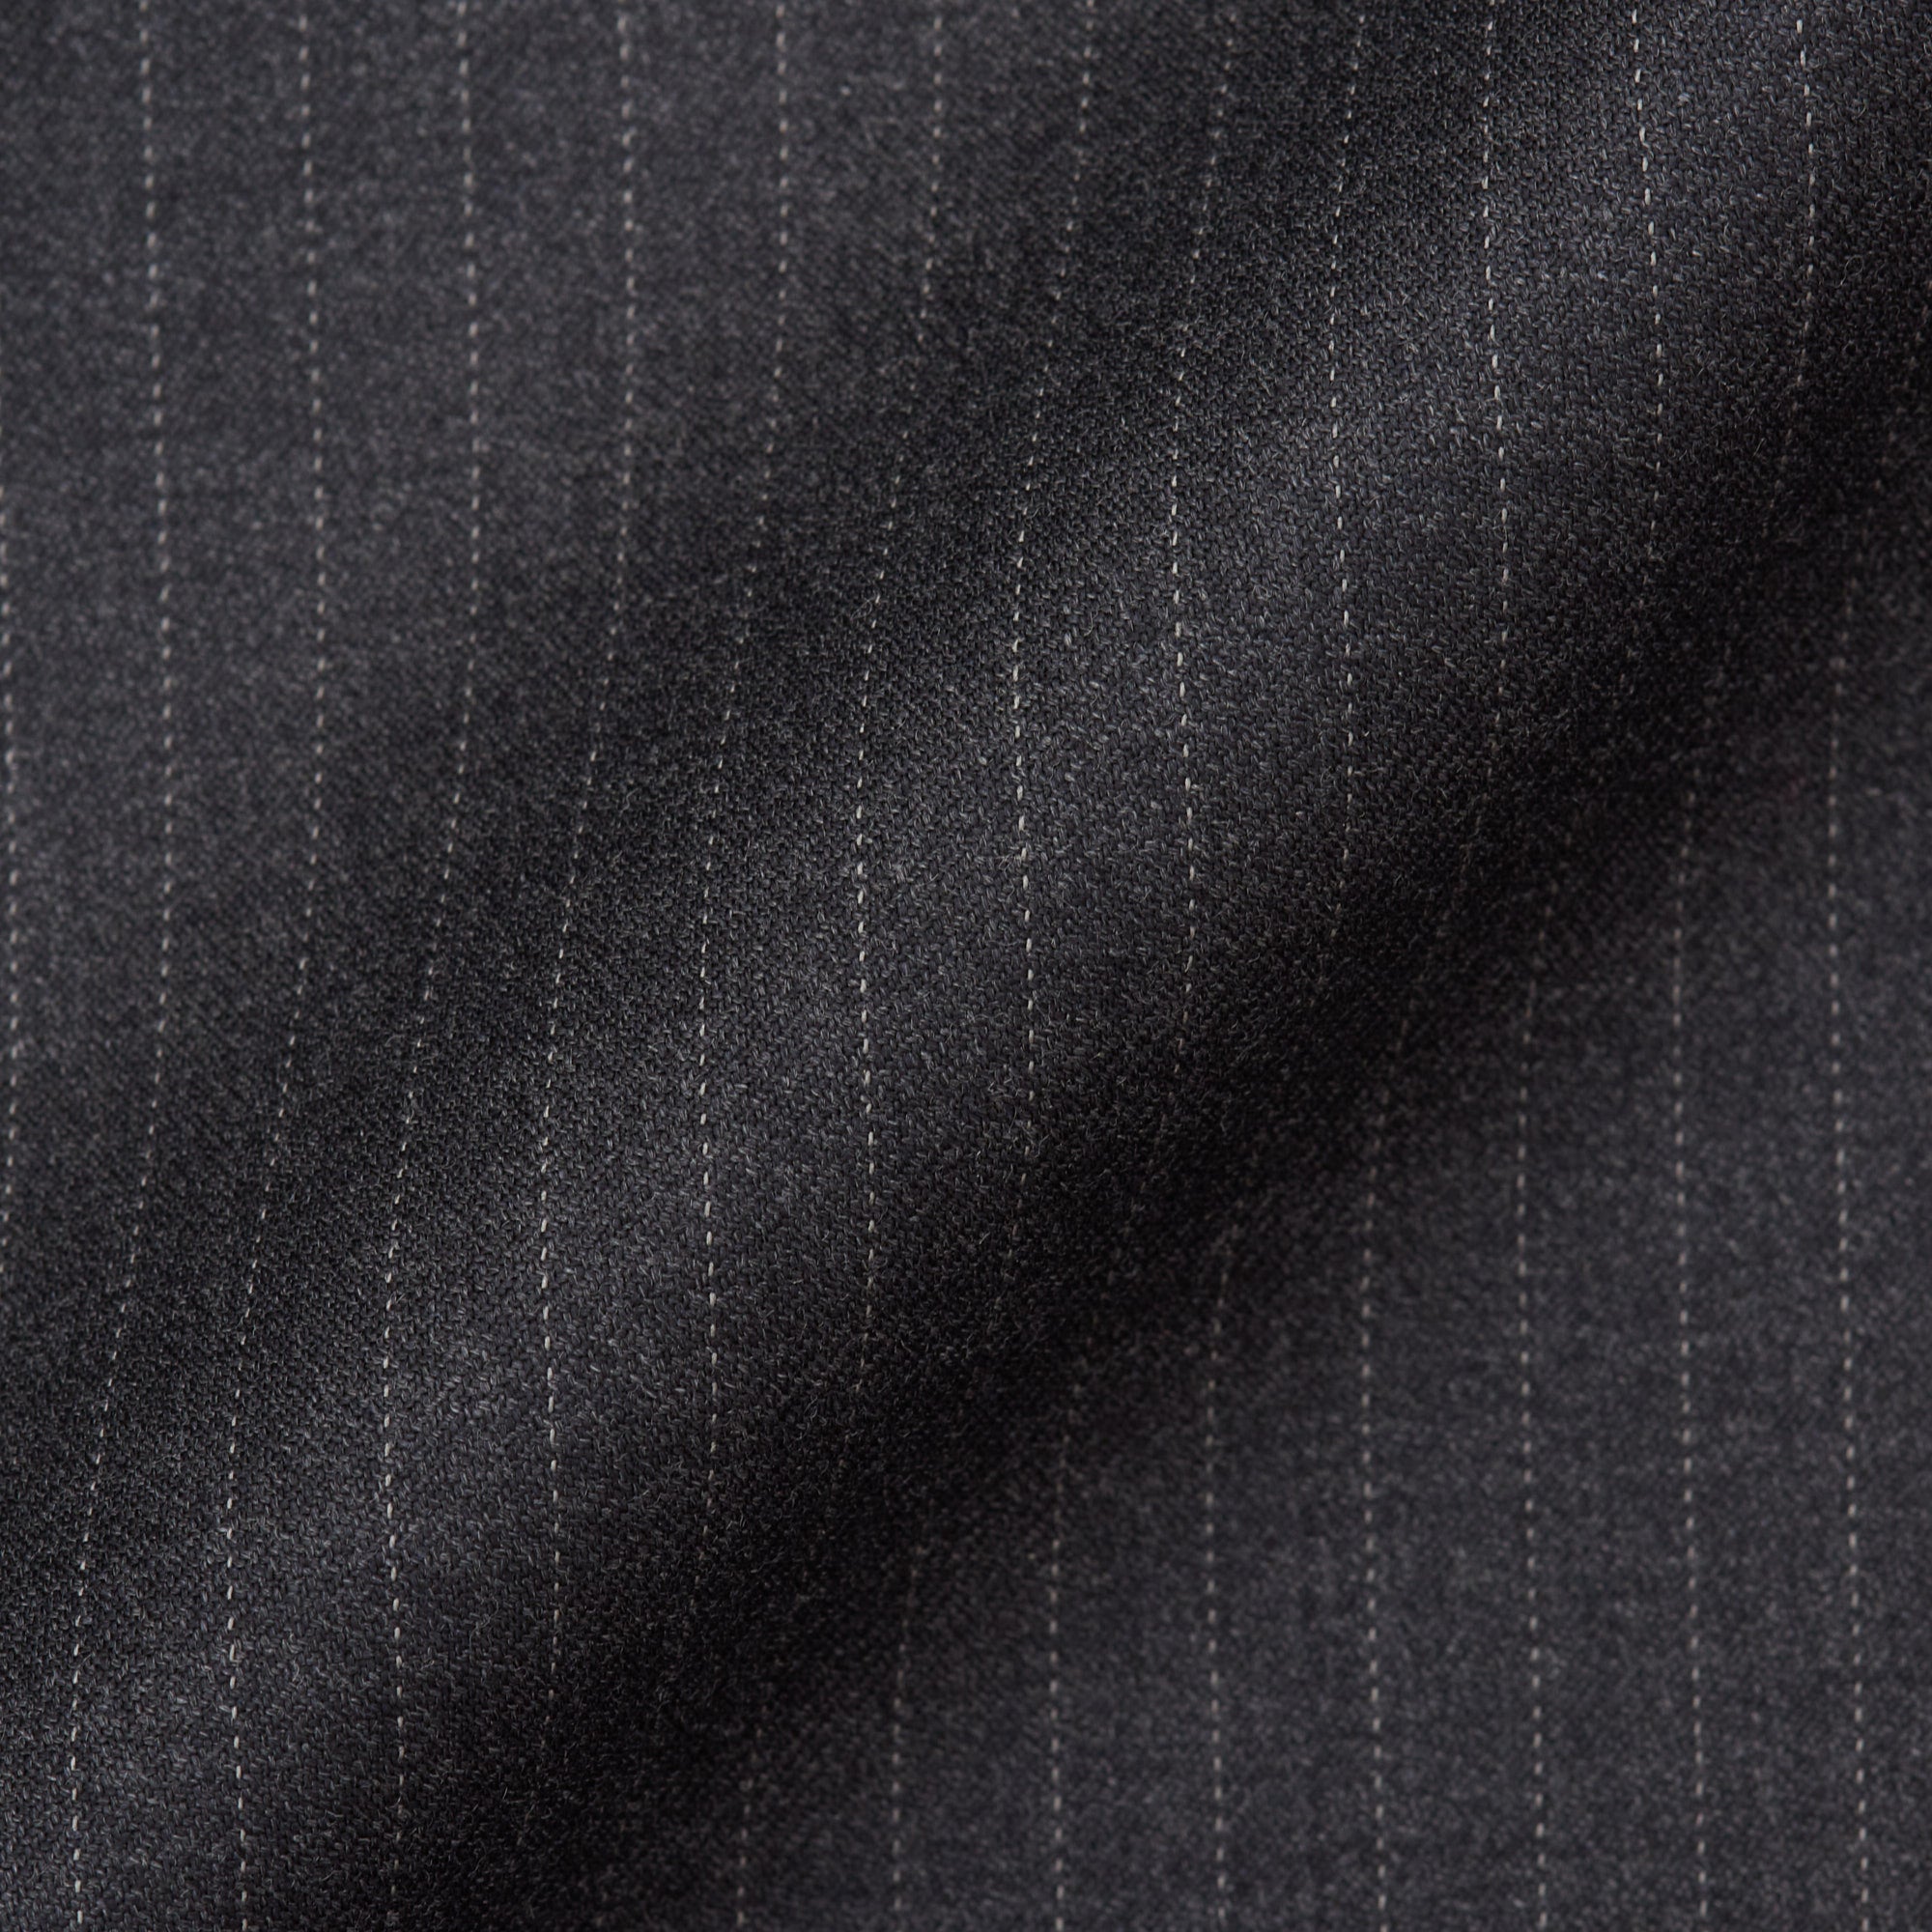 CESARE ATTOLINI Napoli Handmade Gray Striped Wool Super 150's Suit 50 NEW US 40 CESARE ATTOLINI